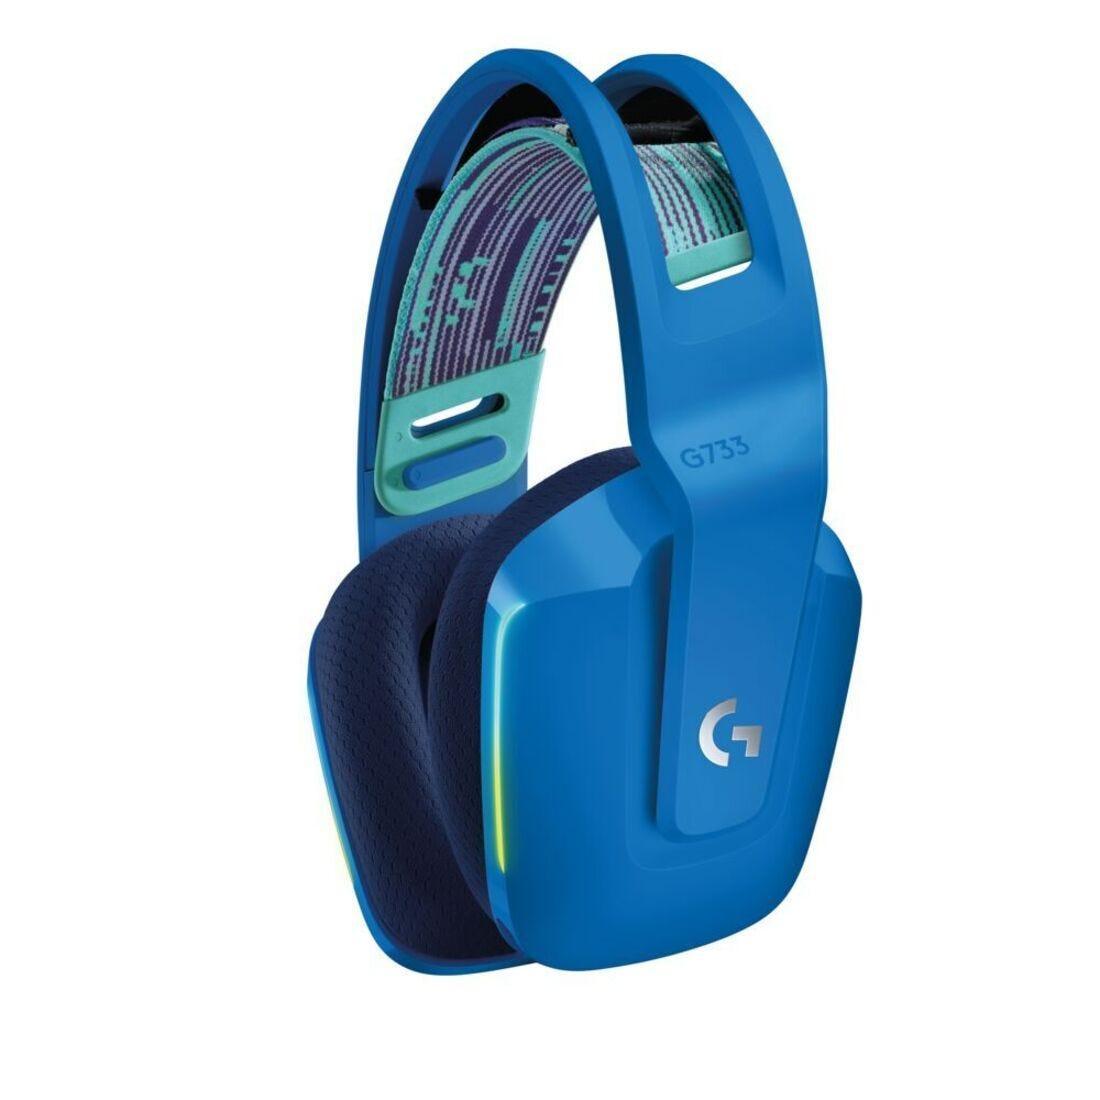 Headset Gamer Logitech G733 Azul Sem Fio 981-000942 - Mega Market